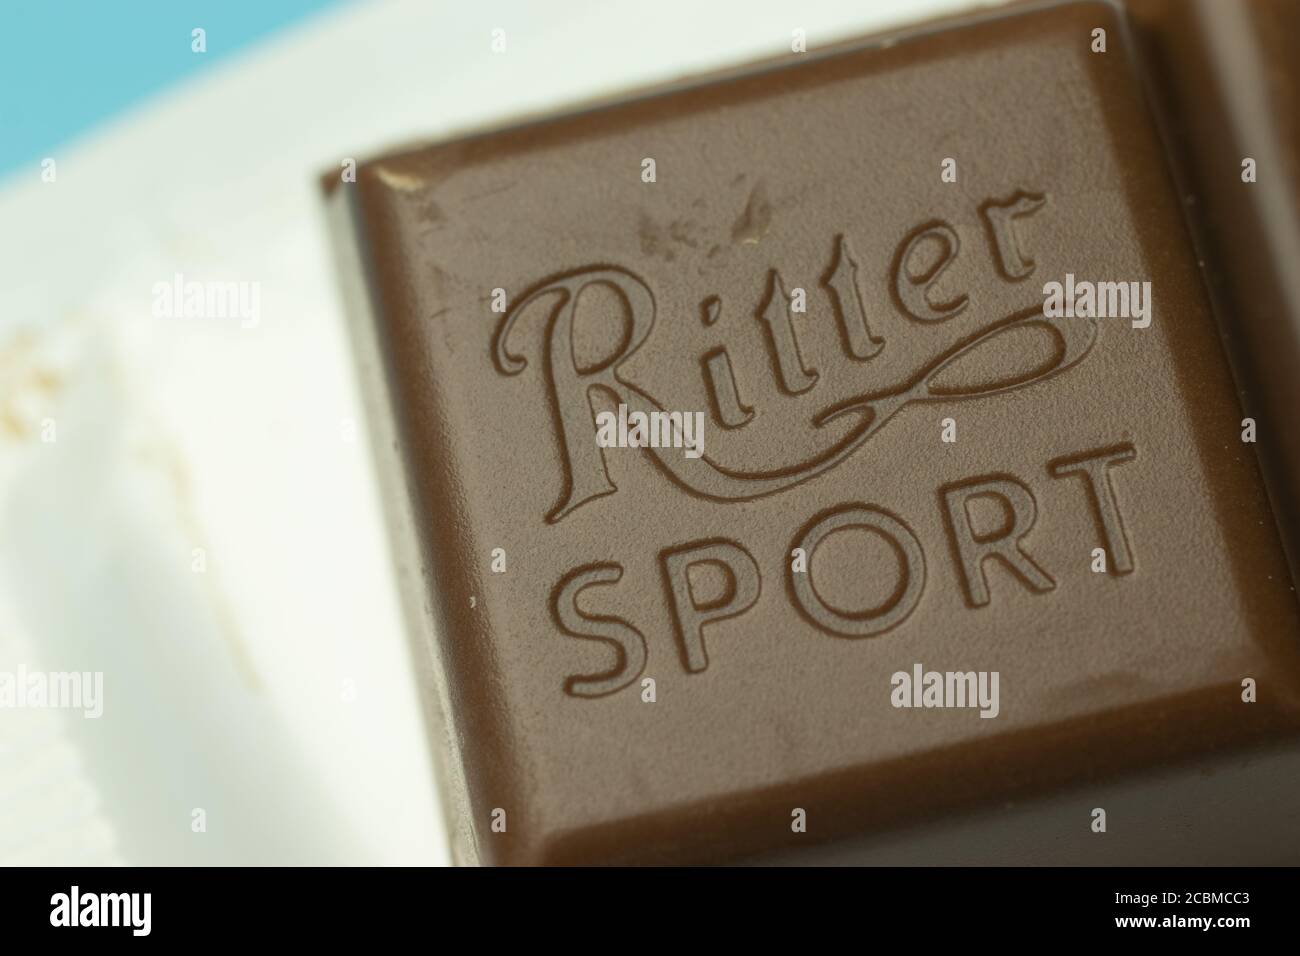 Moscou, Russie - 1er juin 2020 : logo Ritter Sport sur macro barre chocolat, montage Banque D'Images